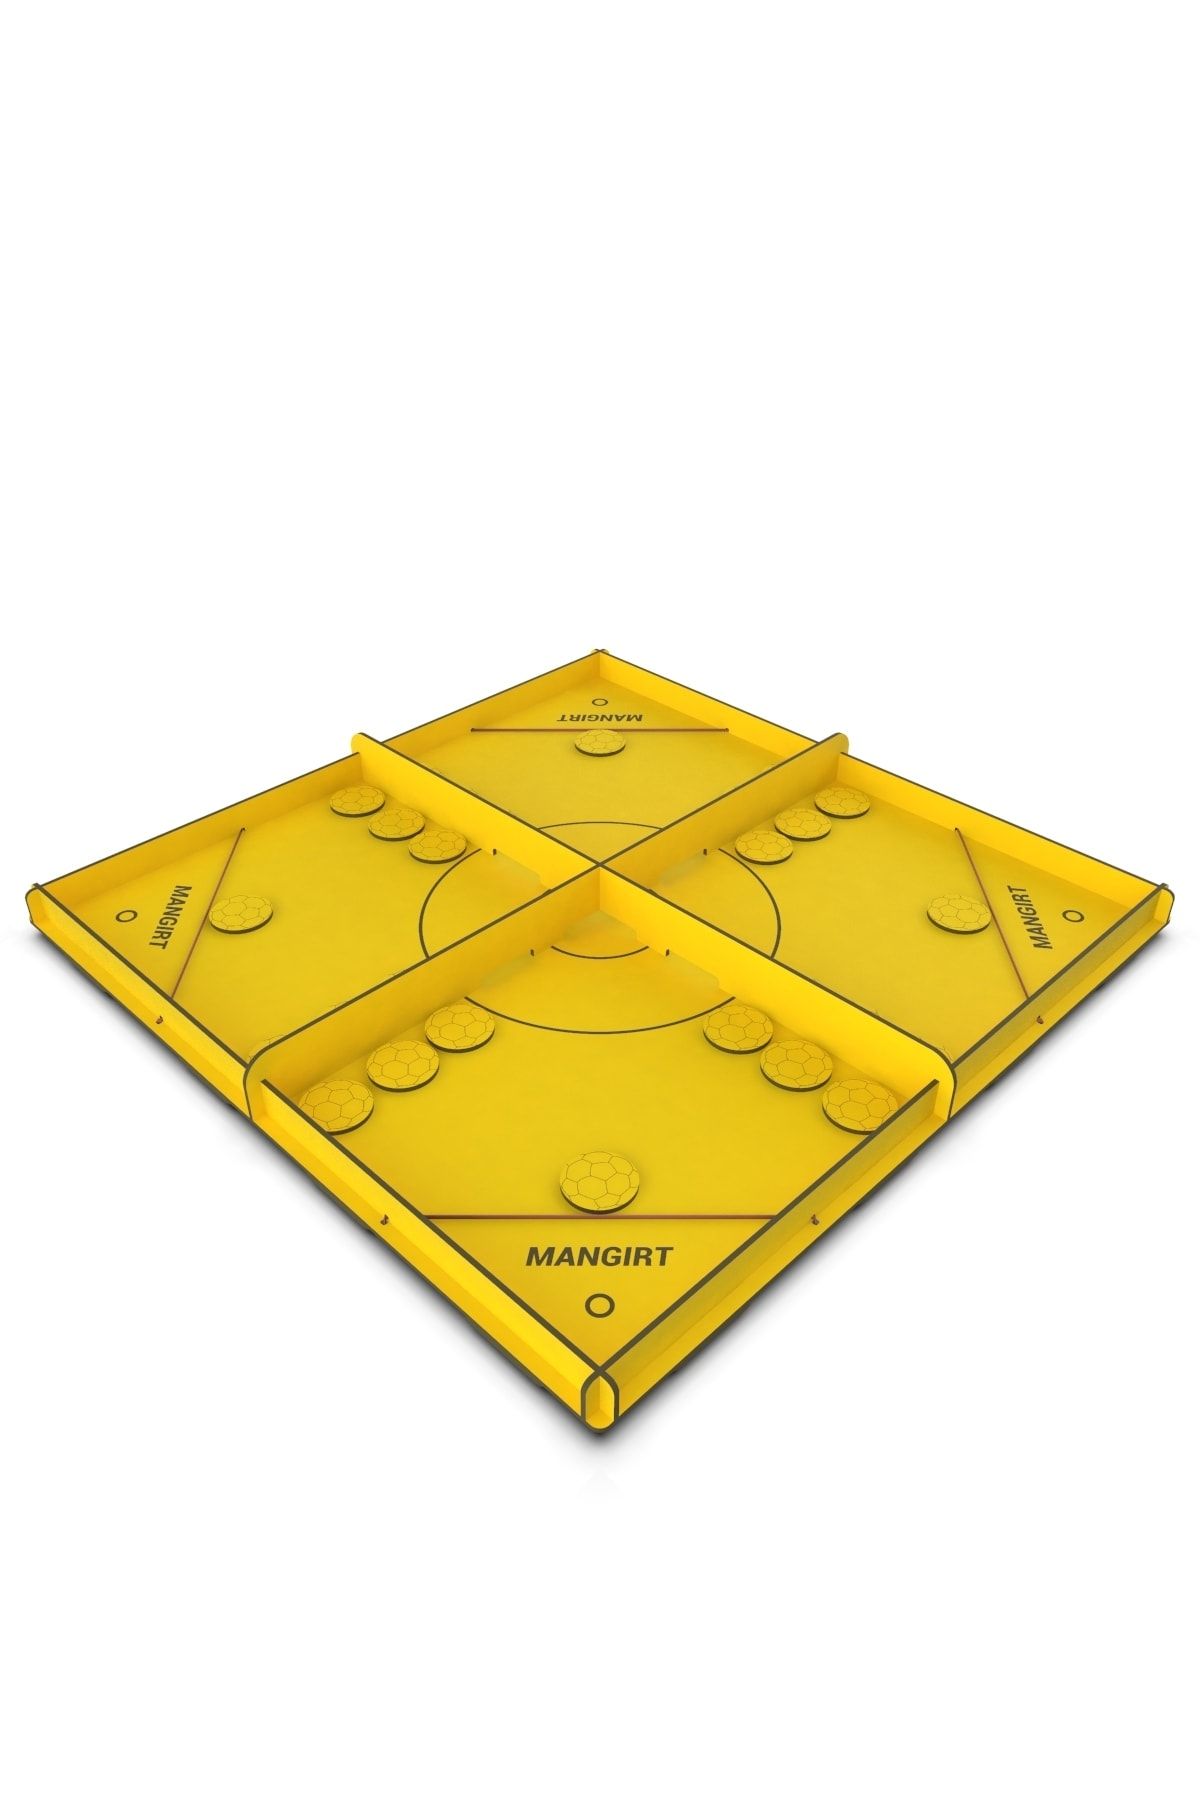 KUK Design Mangırt Slingpuck 4 Kişilik Hızlı Sapan Oyunu Yetişkin & Çocuk (sarı)